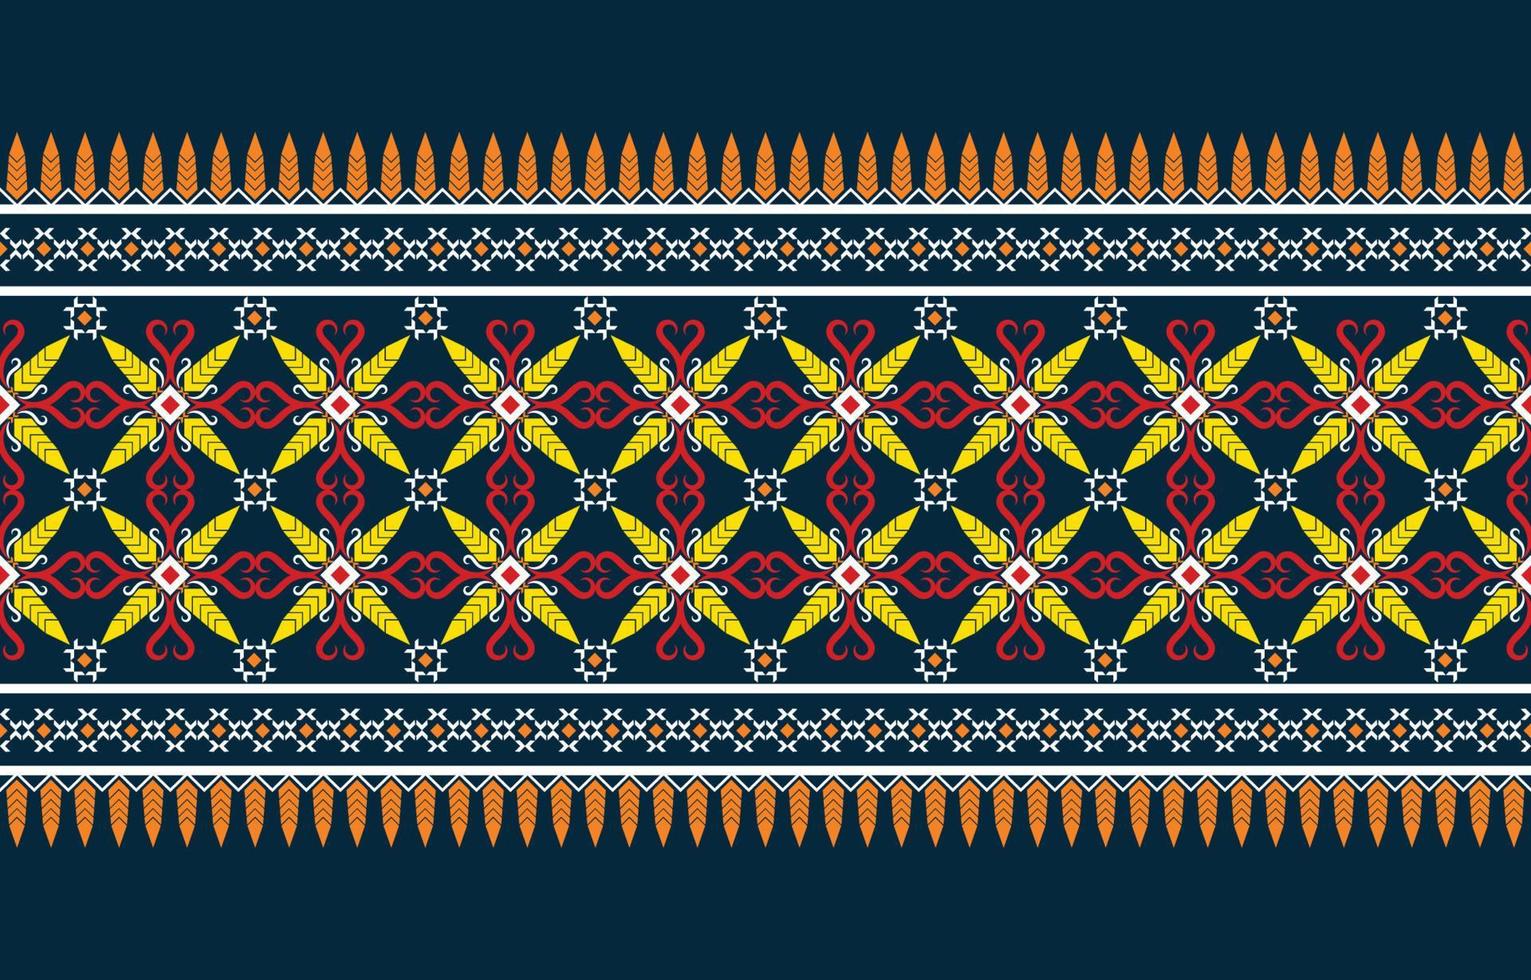 geometrisches ethnisches orientalisches Ikat nahtloses Muster traditionelles Design für Hintergrund, Teppich, Tapete, Kleidung, Verpackung, Batik, Stoff, Vektorillustration. Stickstil. vektor